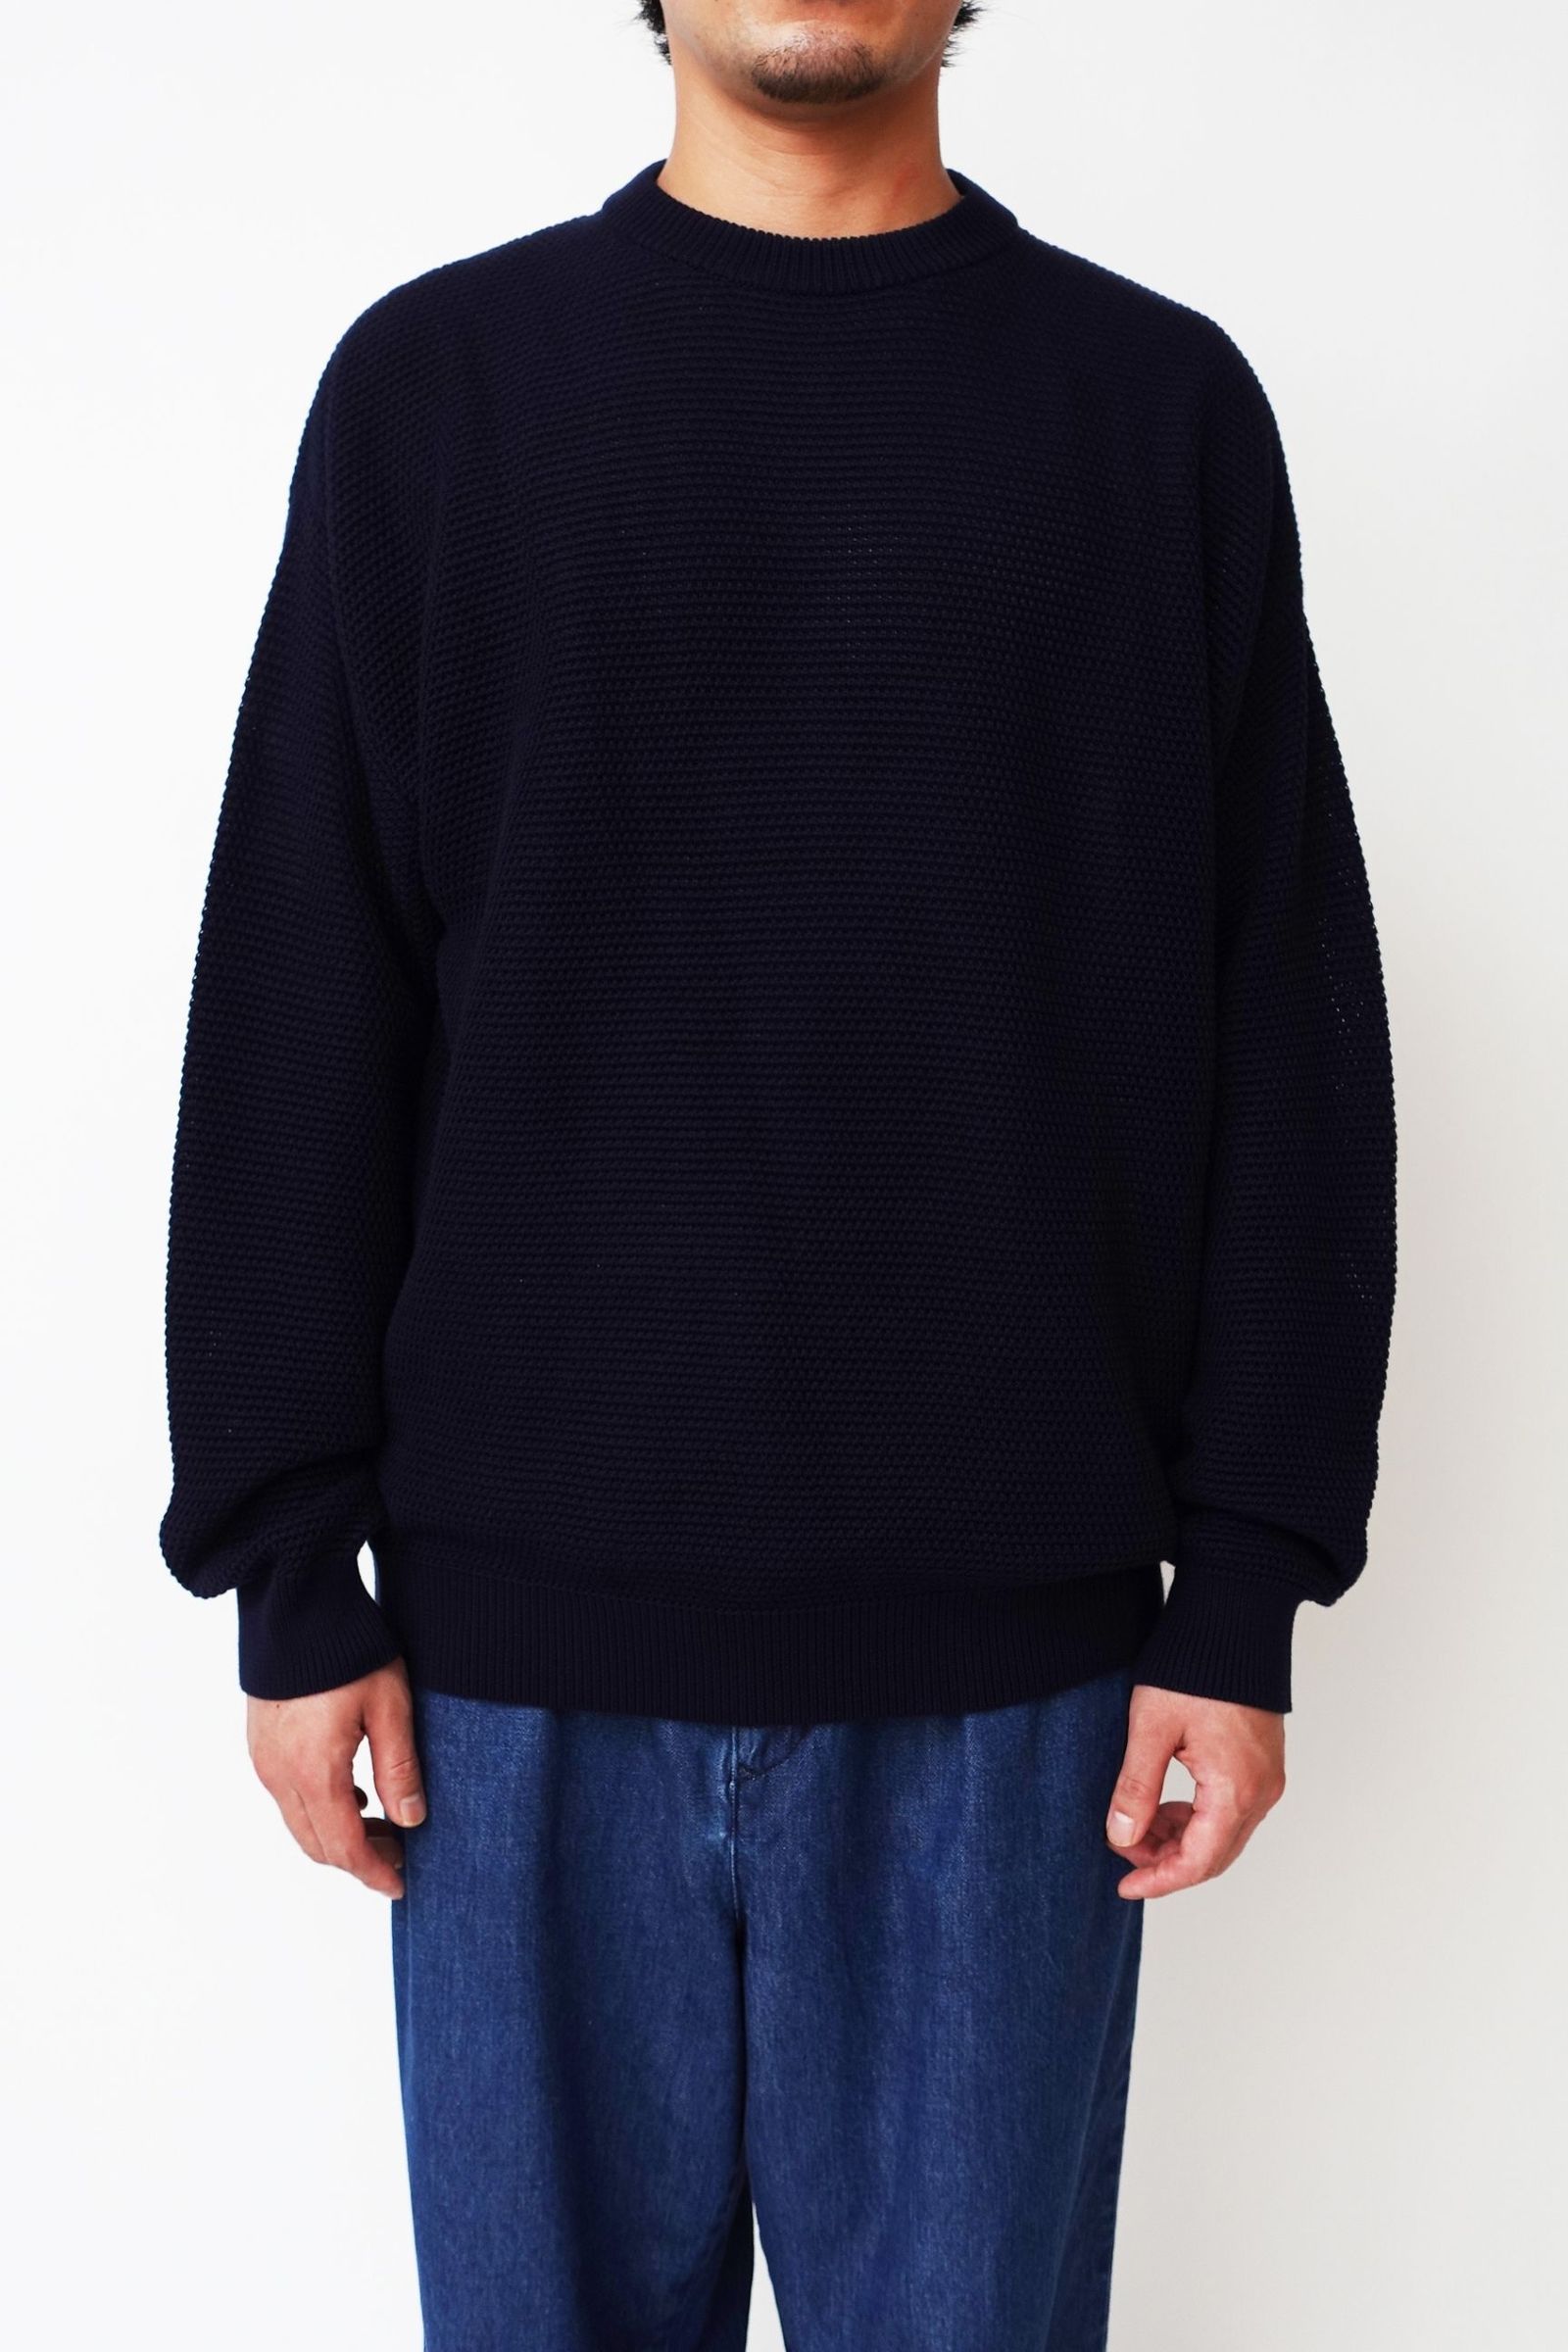 evcon エビコン Cotton Knit Crew Sweater 1LDK ニット/セーター トップス メンズ 【お気に入り】